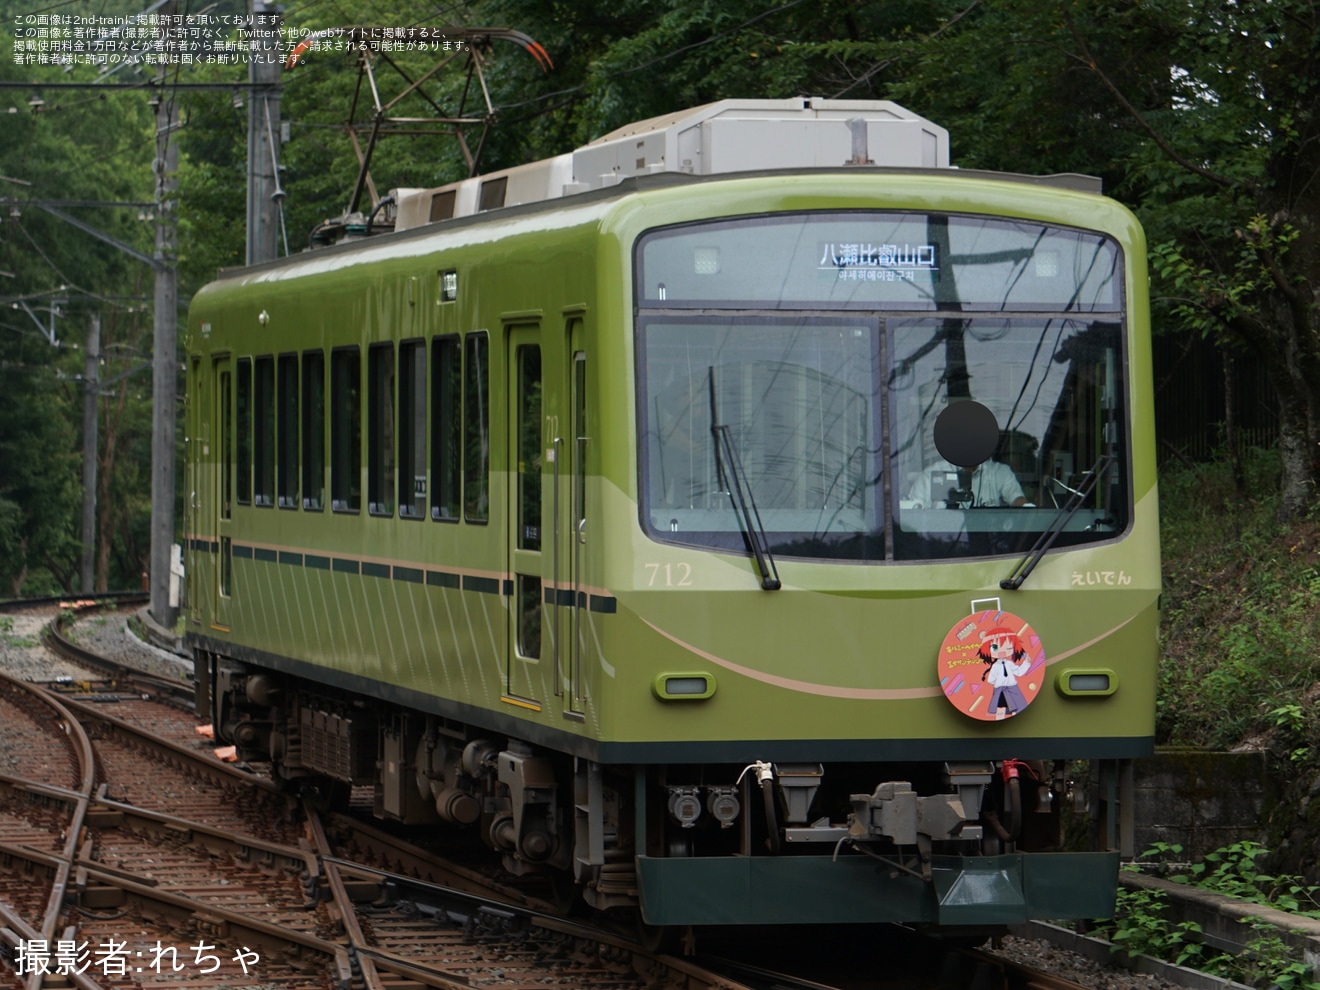 【叡電】「キルミーベイベー×叡山電車コラボ」ヘッドマークを取り付けの拡大写真